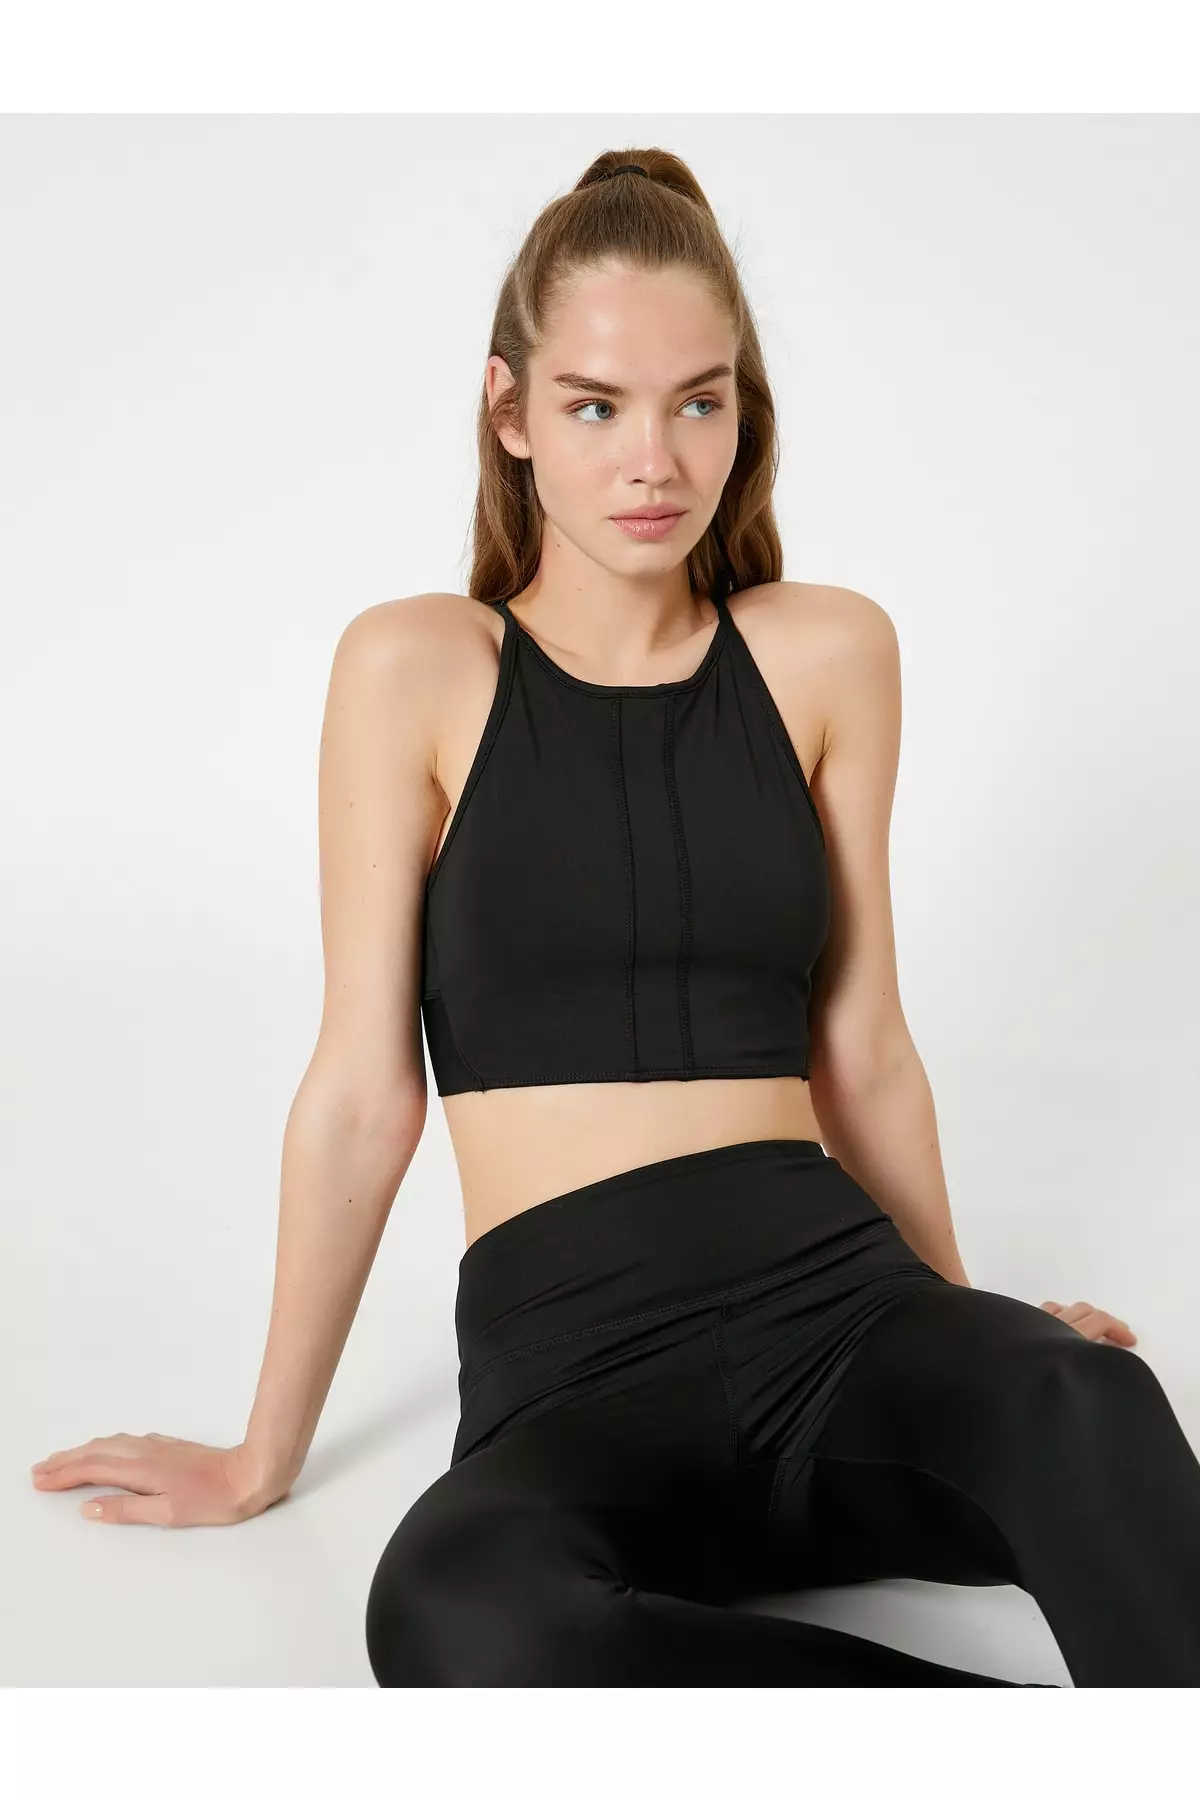 Buy online Black Halter Neck Bralette from lingerie for Women by